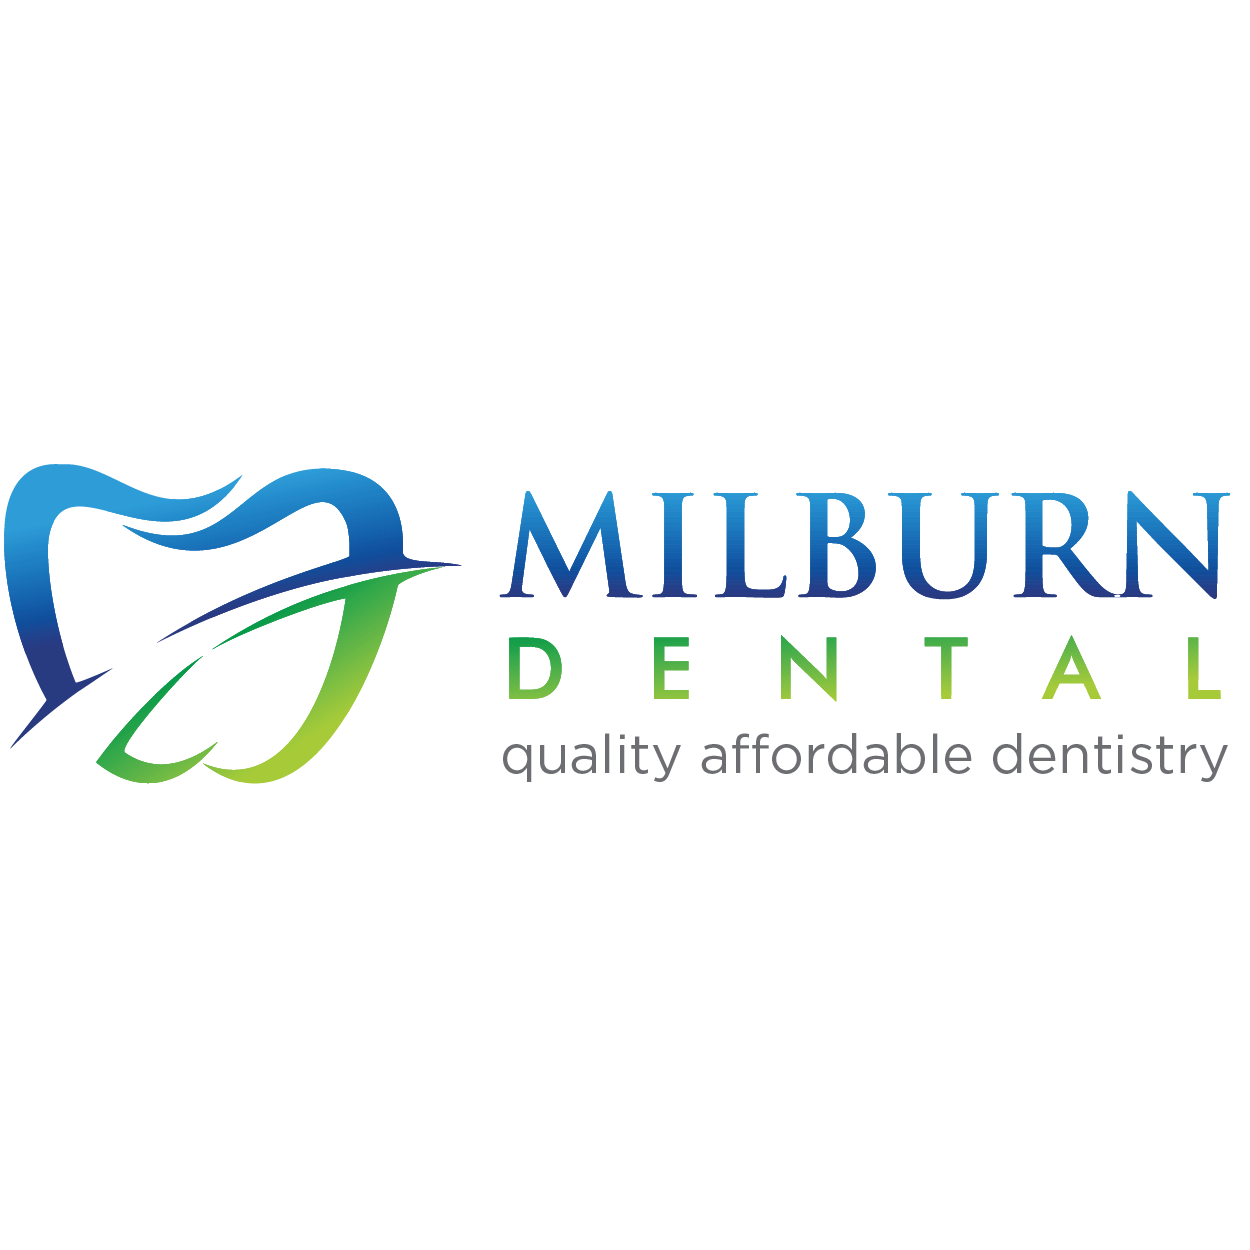 Business logo of Milburn Dental